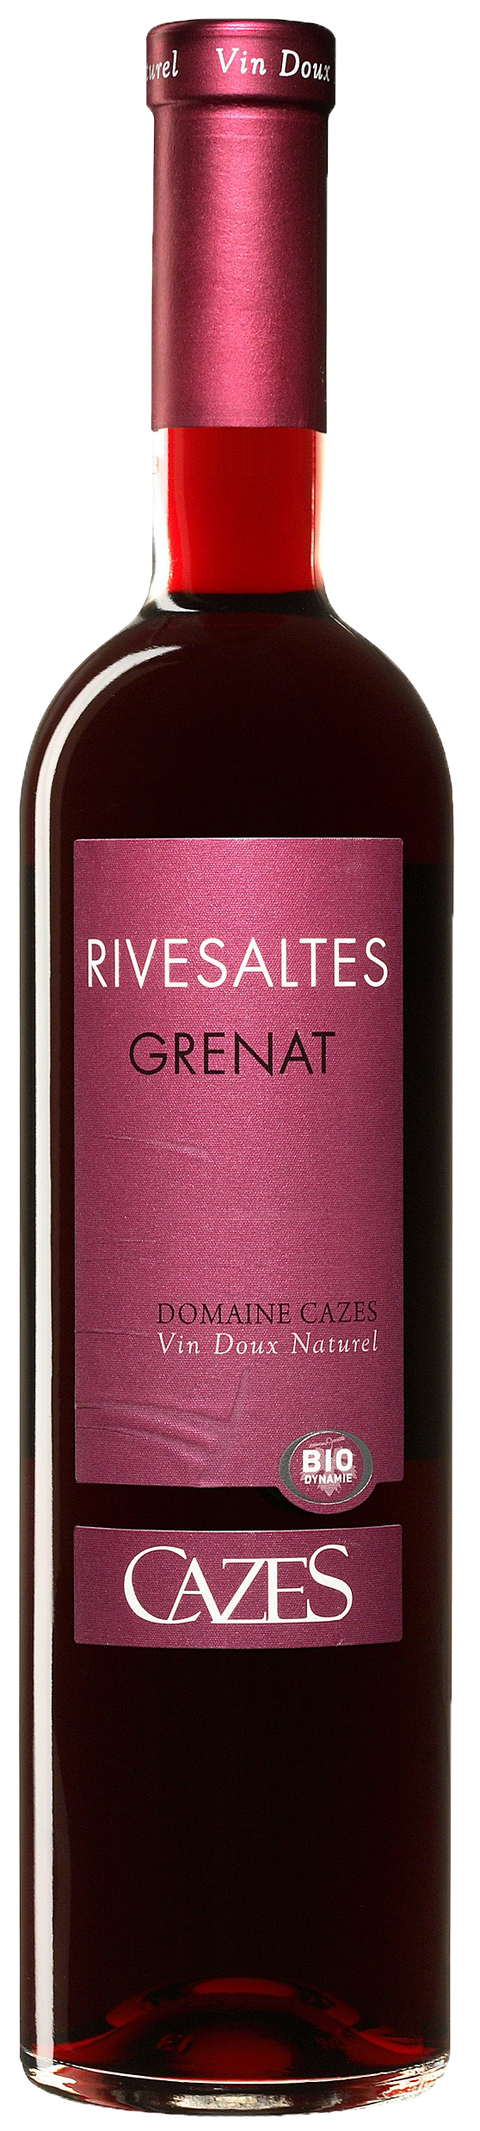 Rivesaltes Grenat---2016---Vins Doux Naturel---Cazes---0.75